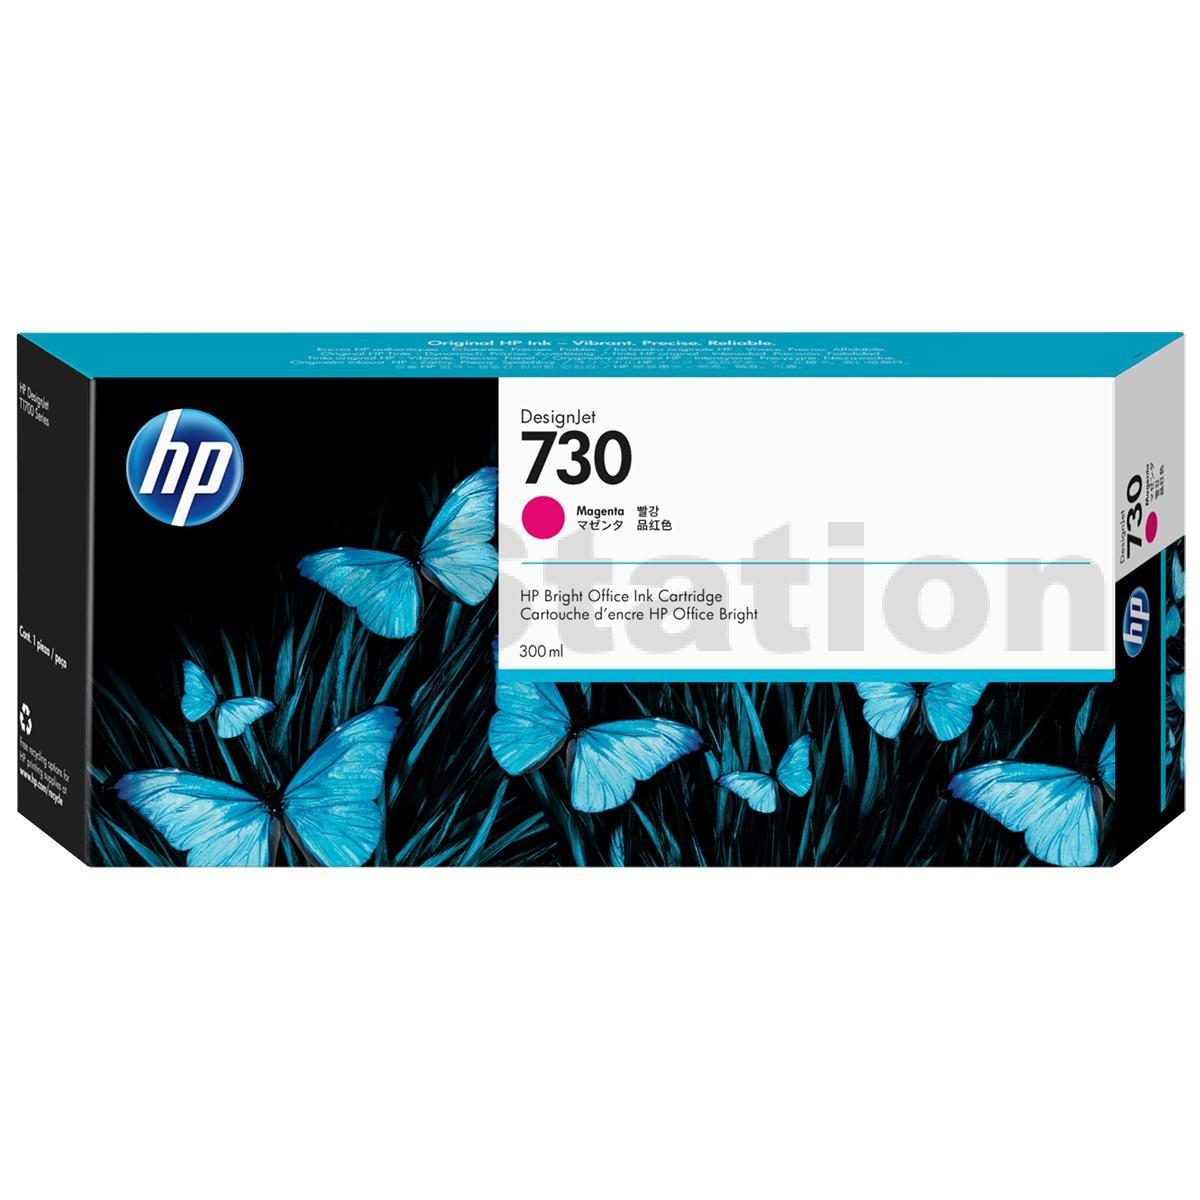 HP Designjet T1600 Magenta Ink Cartridge